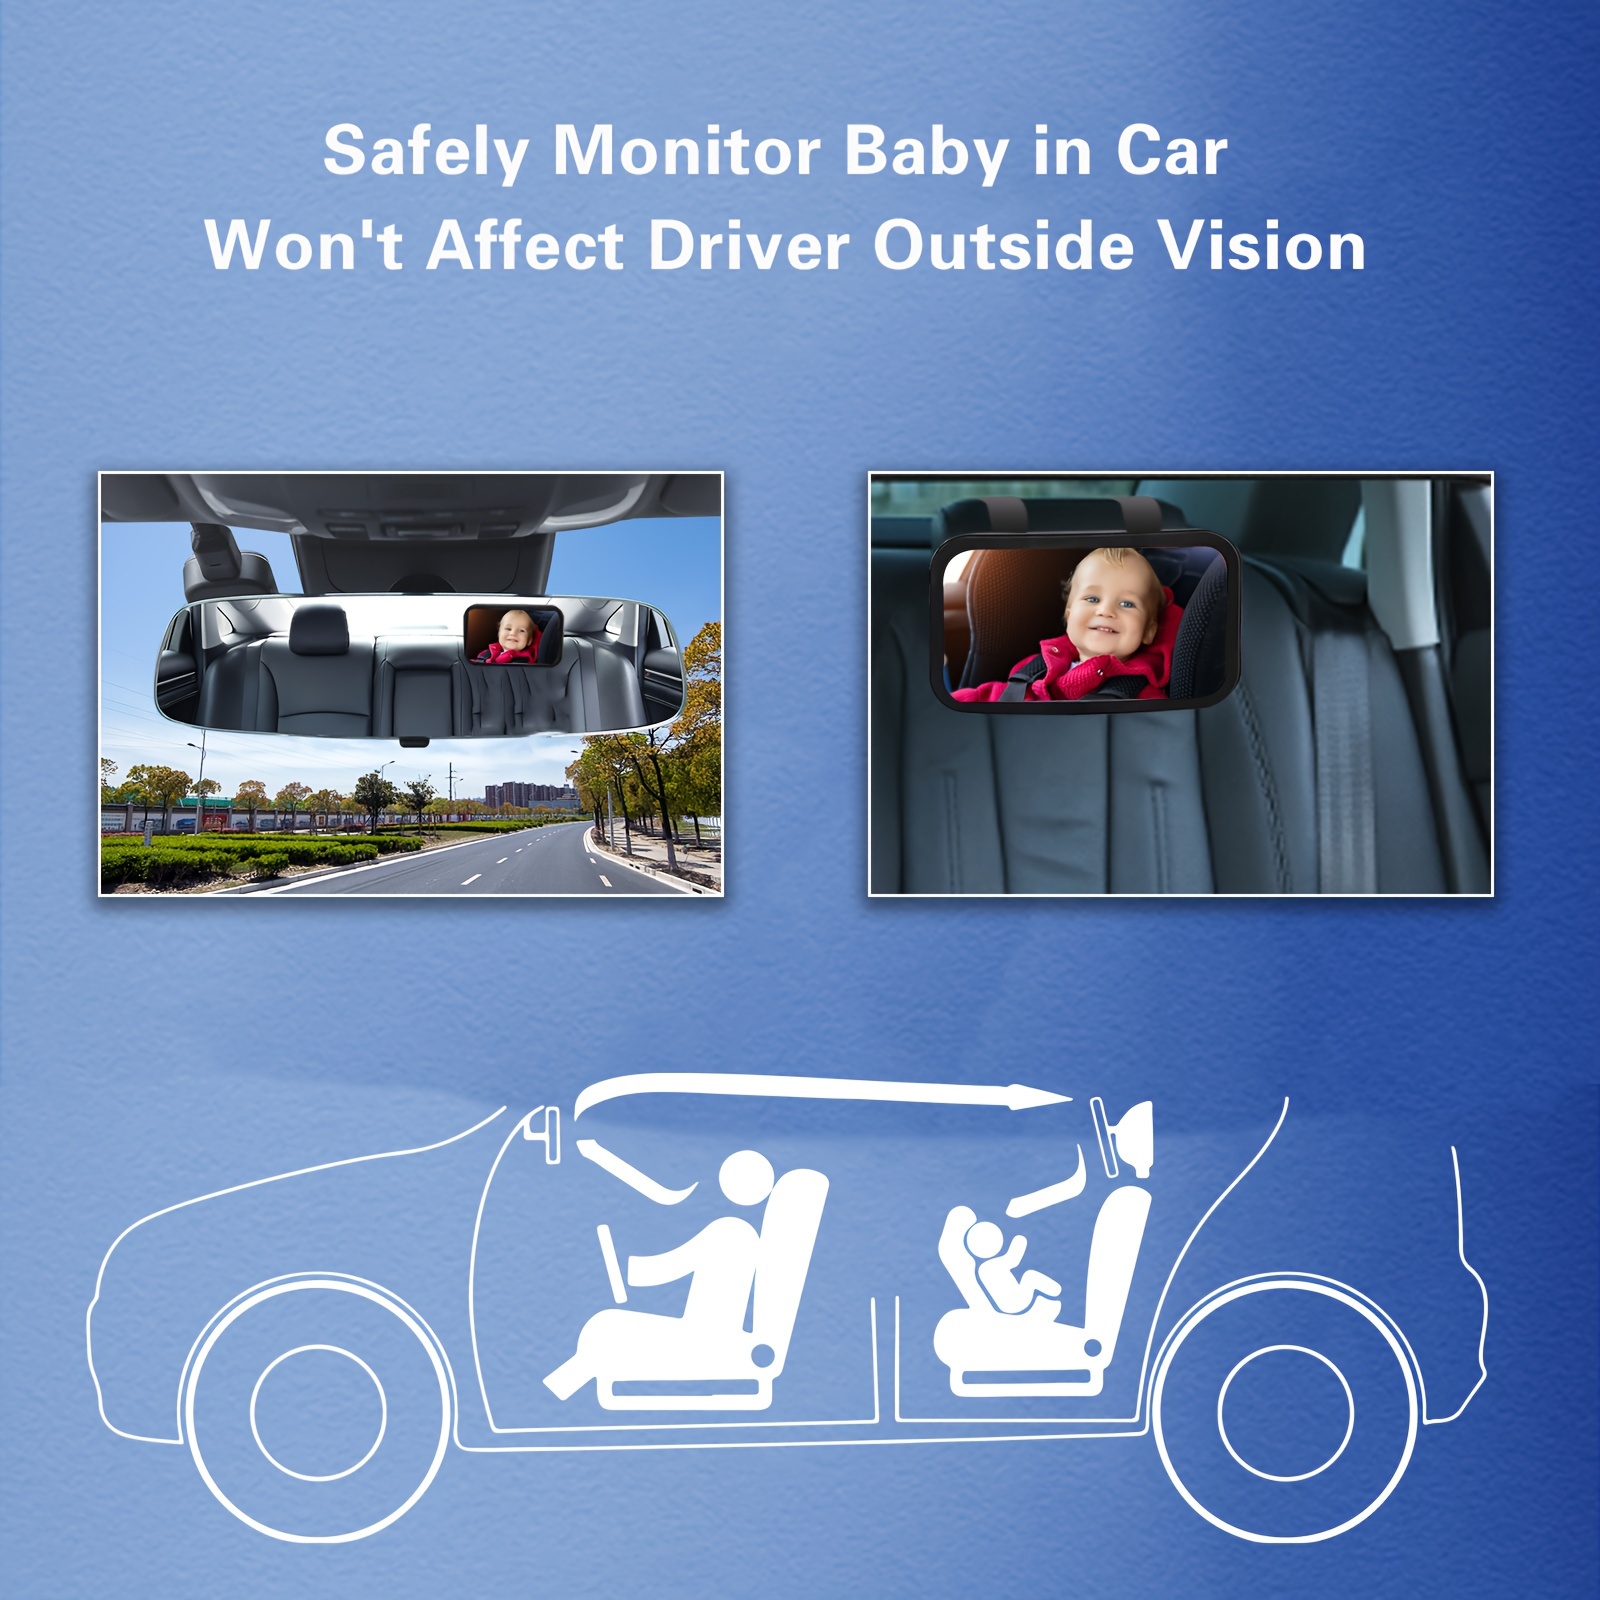 Baby-spiegel 2 Haken, 1 Stück Warnaufkleber, Baby-rückspiegel Beobachtung  Rücksitzes, Baby-auto-beobachtungsspiegel, Sicherheits-autospiegel, Sparen  Mehr Ausverkaufsangeboten